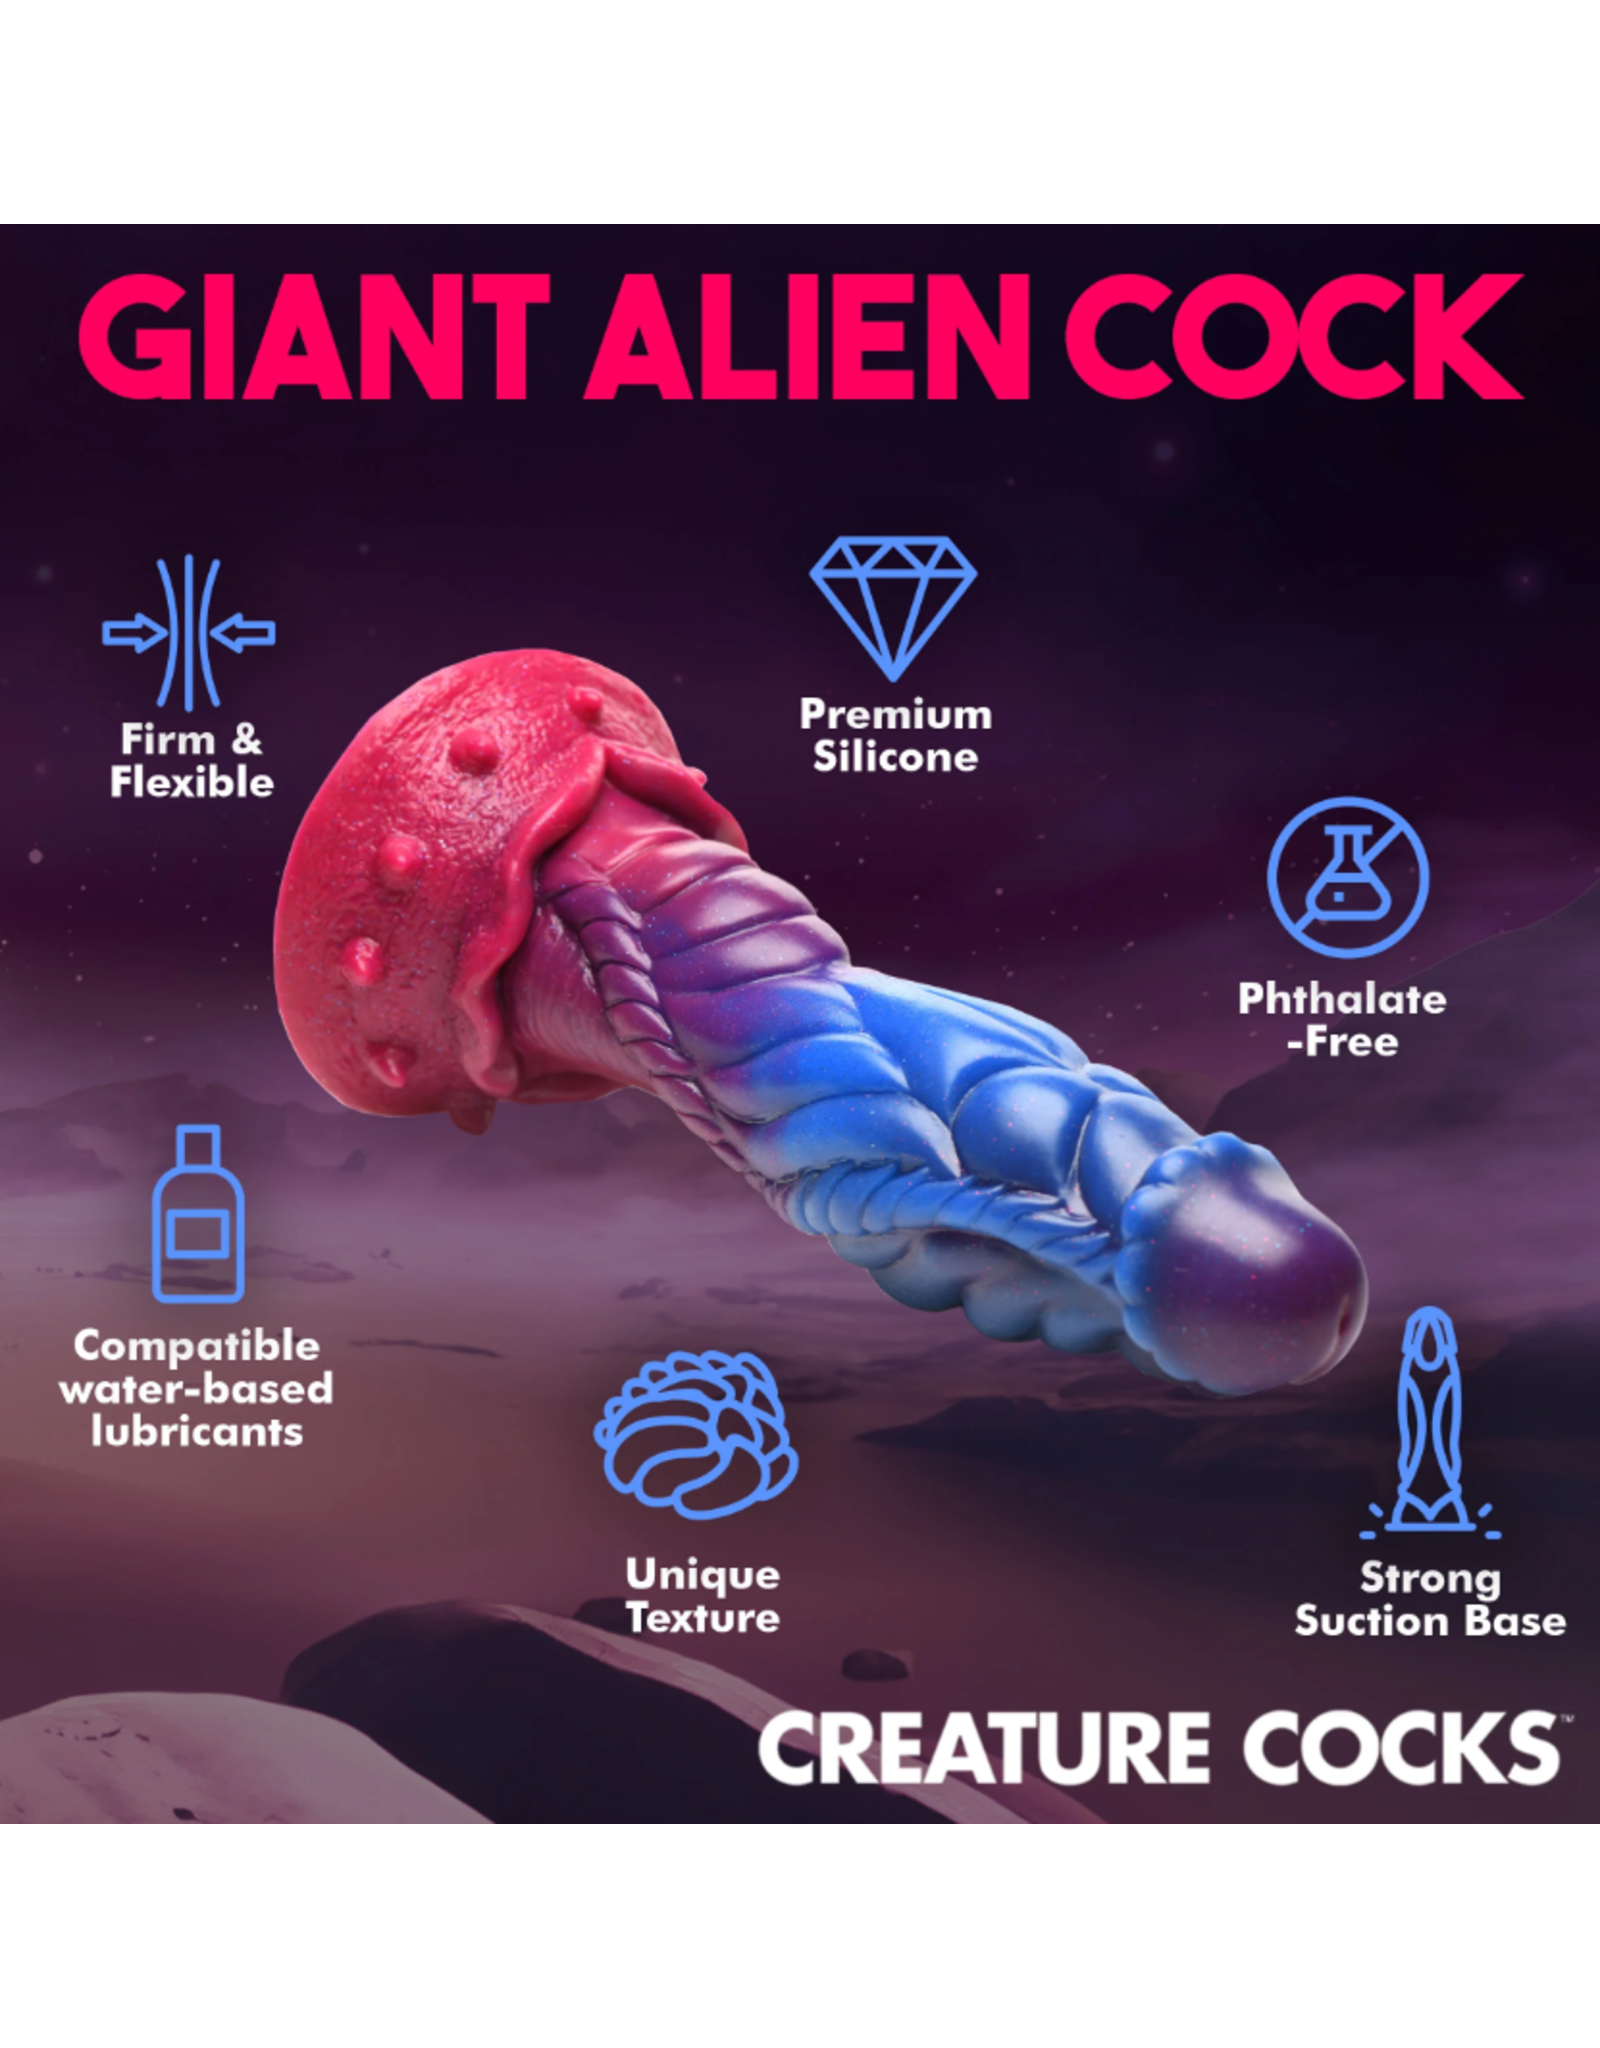 XR Brands Creature Cocks - Intruder Alien Silicone Dildo